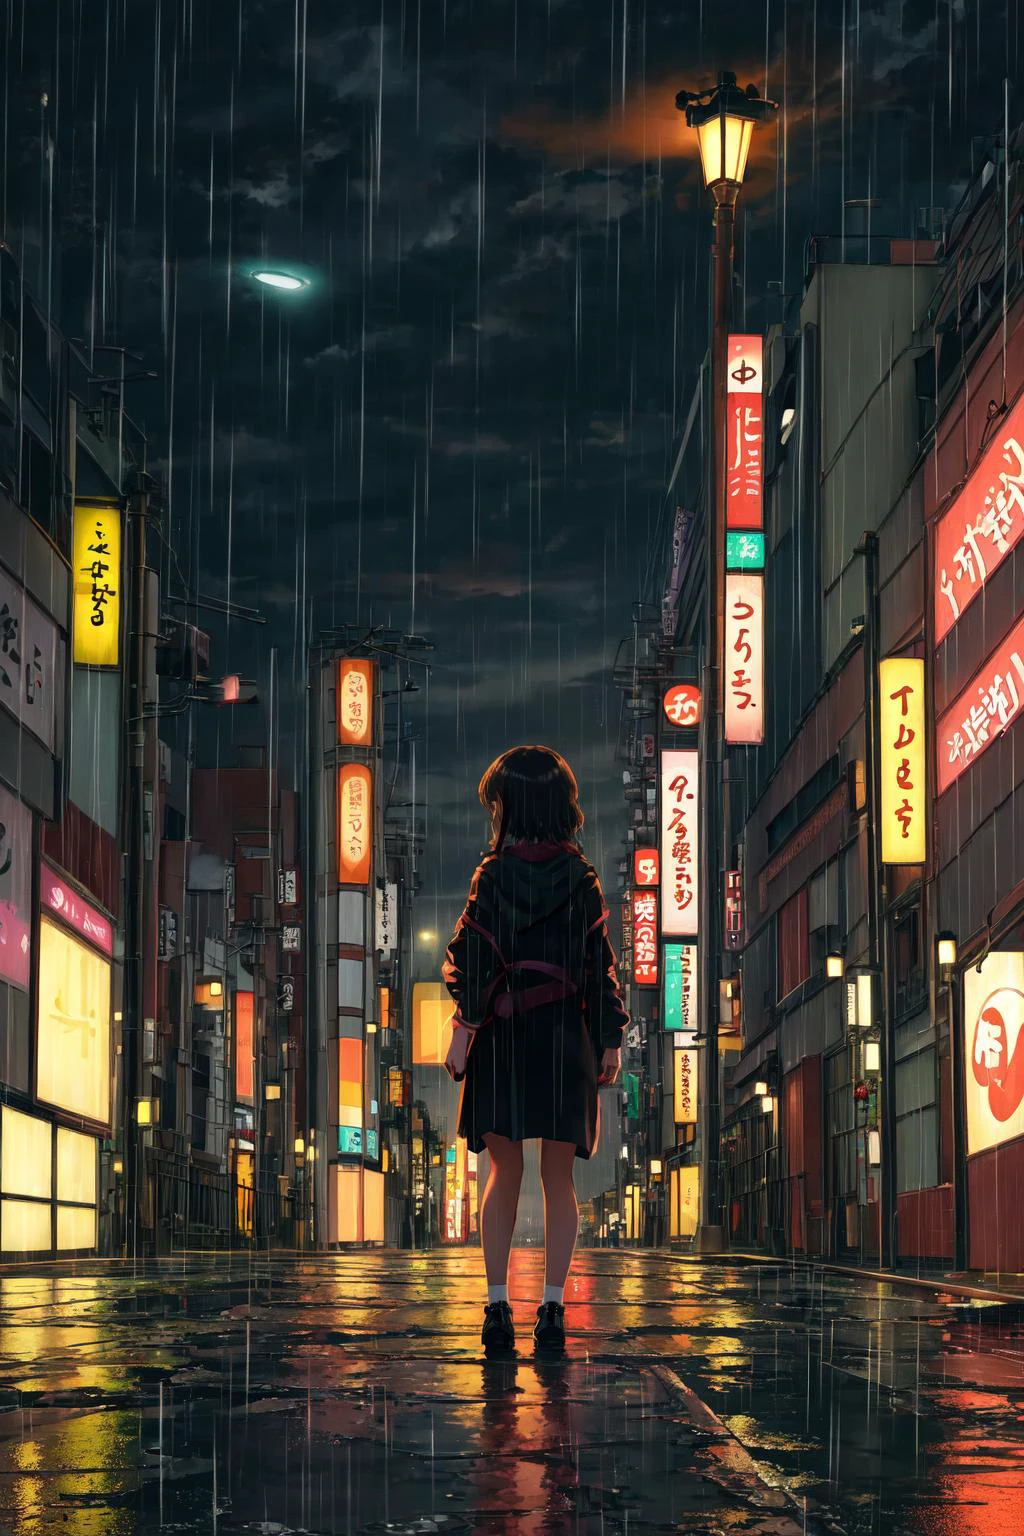 ผลงานชิ้นเอก,คุณภาพดีที่สุด,1สาว,ตามลำพัง,มองไปที่ผู้ดู,ดึกดื่น, โตเกียว, ถนนร้าง, มุมมองที่ห่างไกล, พื้นหลัง, ความเหงา, ฝน, ไฟถนน, แสงอ่อน,